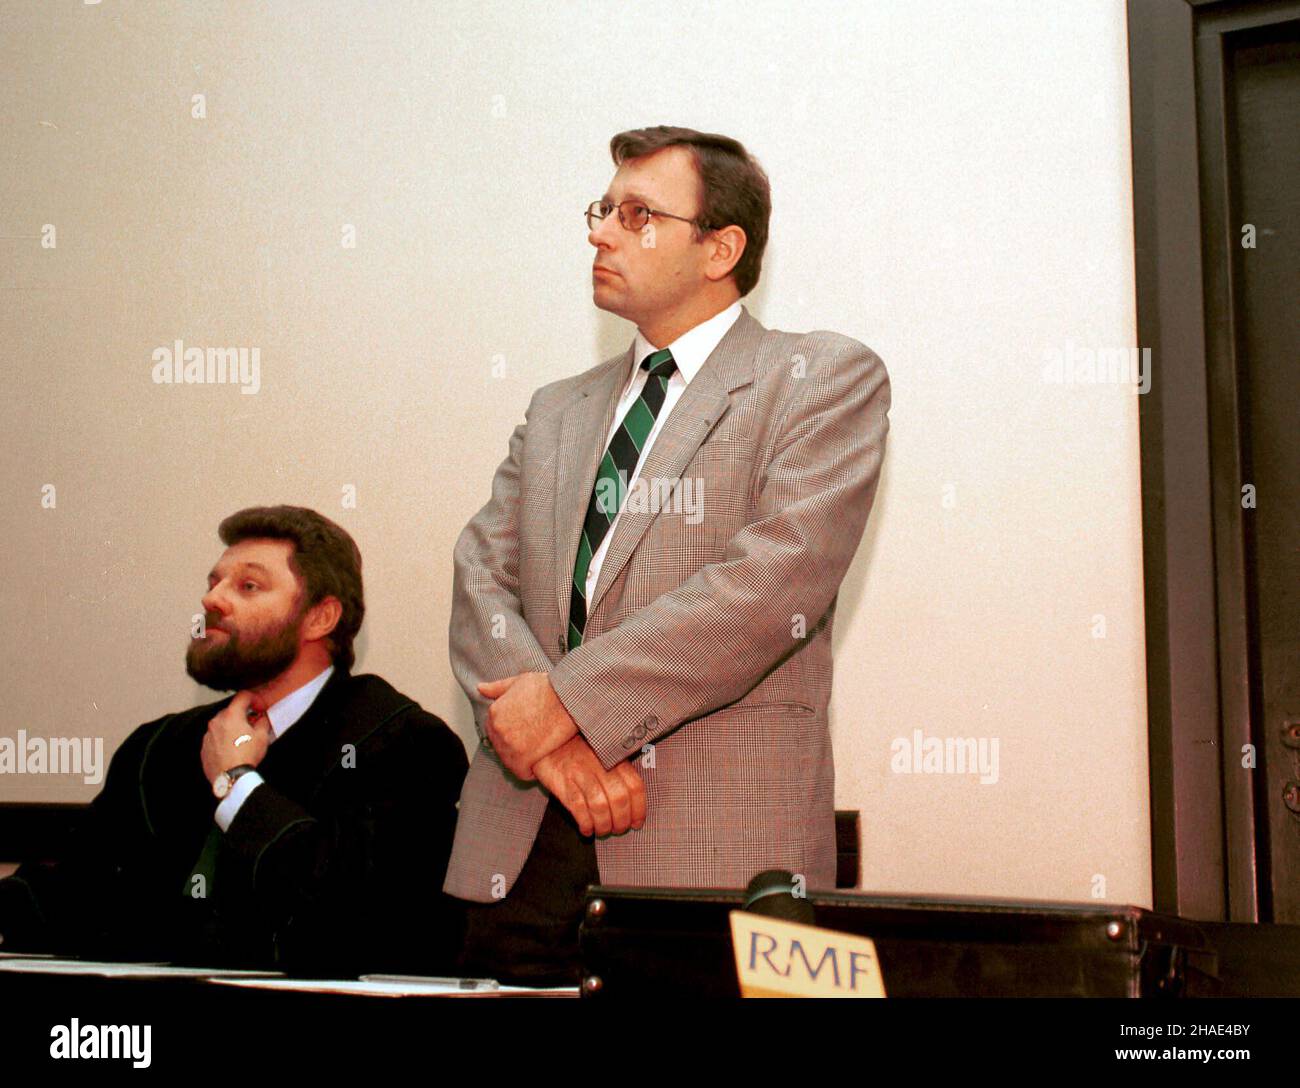 Warszawa, 13.11.1995. Proces przeciwko Janowi Parysowi, oskarzonemo o oszczerstwo i naruszenie dóbr osobistych prof. Wies³awa Chrzanowskiego. N/z Jan Parys (P) z adwokatem. (kru) PAP/Adam Urbanek     Warsaw, 13.11.1995. A trial of Polish politician Jan Parys, accused of infringement of personal rights of Wieslaw Chrzanowski. Pictured: Jan Parys (R) with a lawyer in a court in Warsaw. (kru) PAP/Adam Urbanek Stock Photo